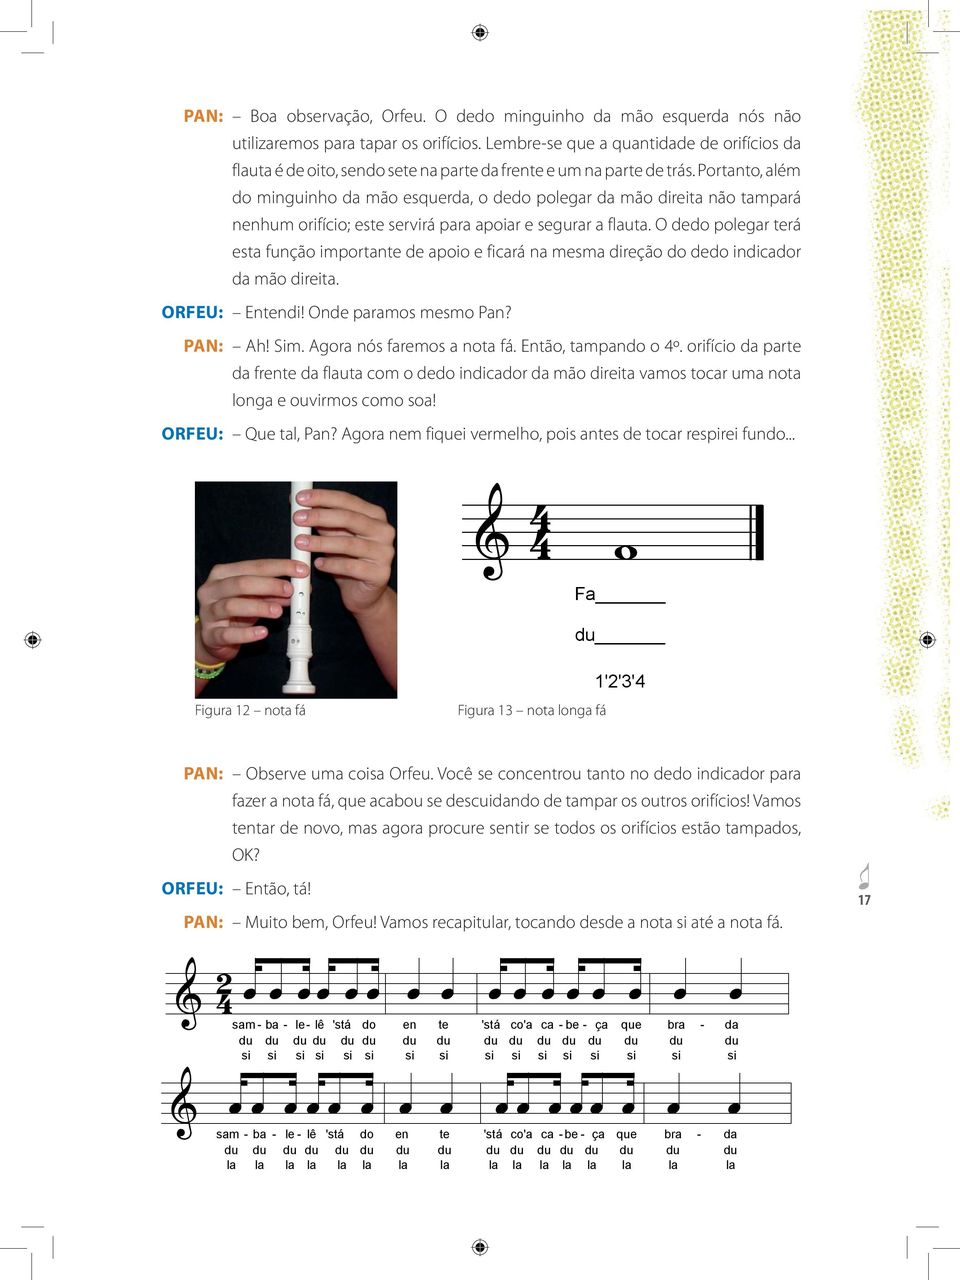 Portanto, além do minguinho da mão esquerda, o dedo polegar da mão direita não tampará nenhum orifício; este servirá para apoiar e segurar a flauta.